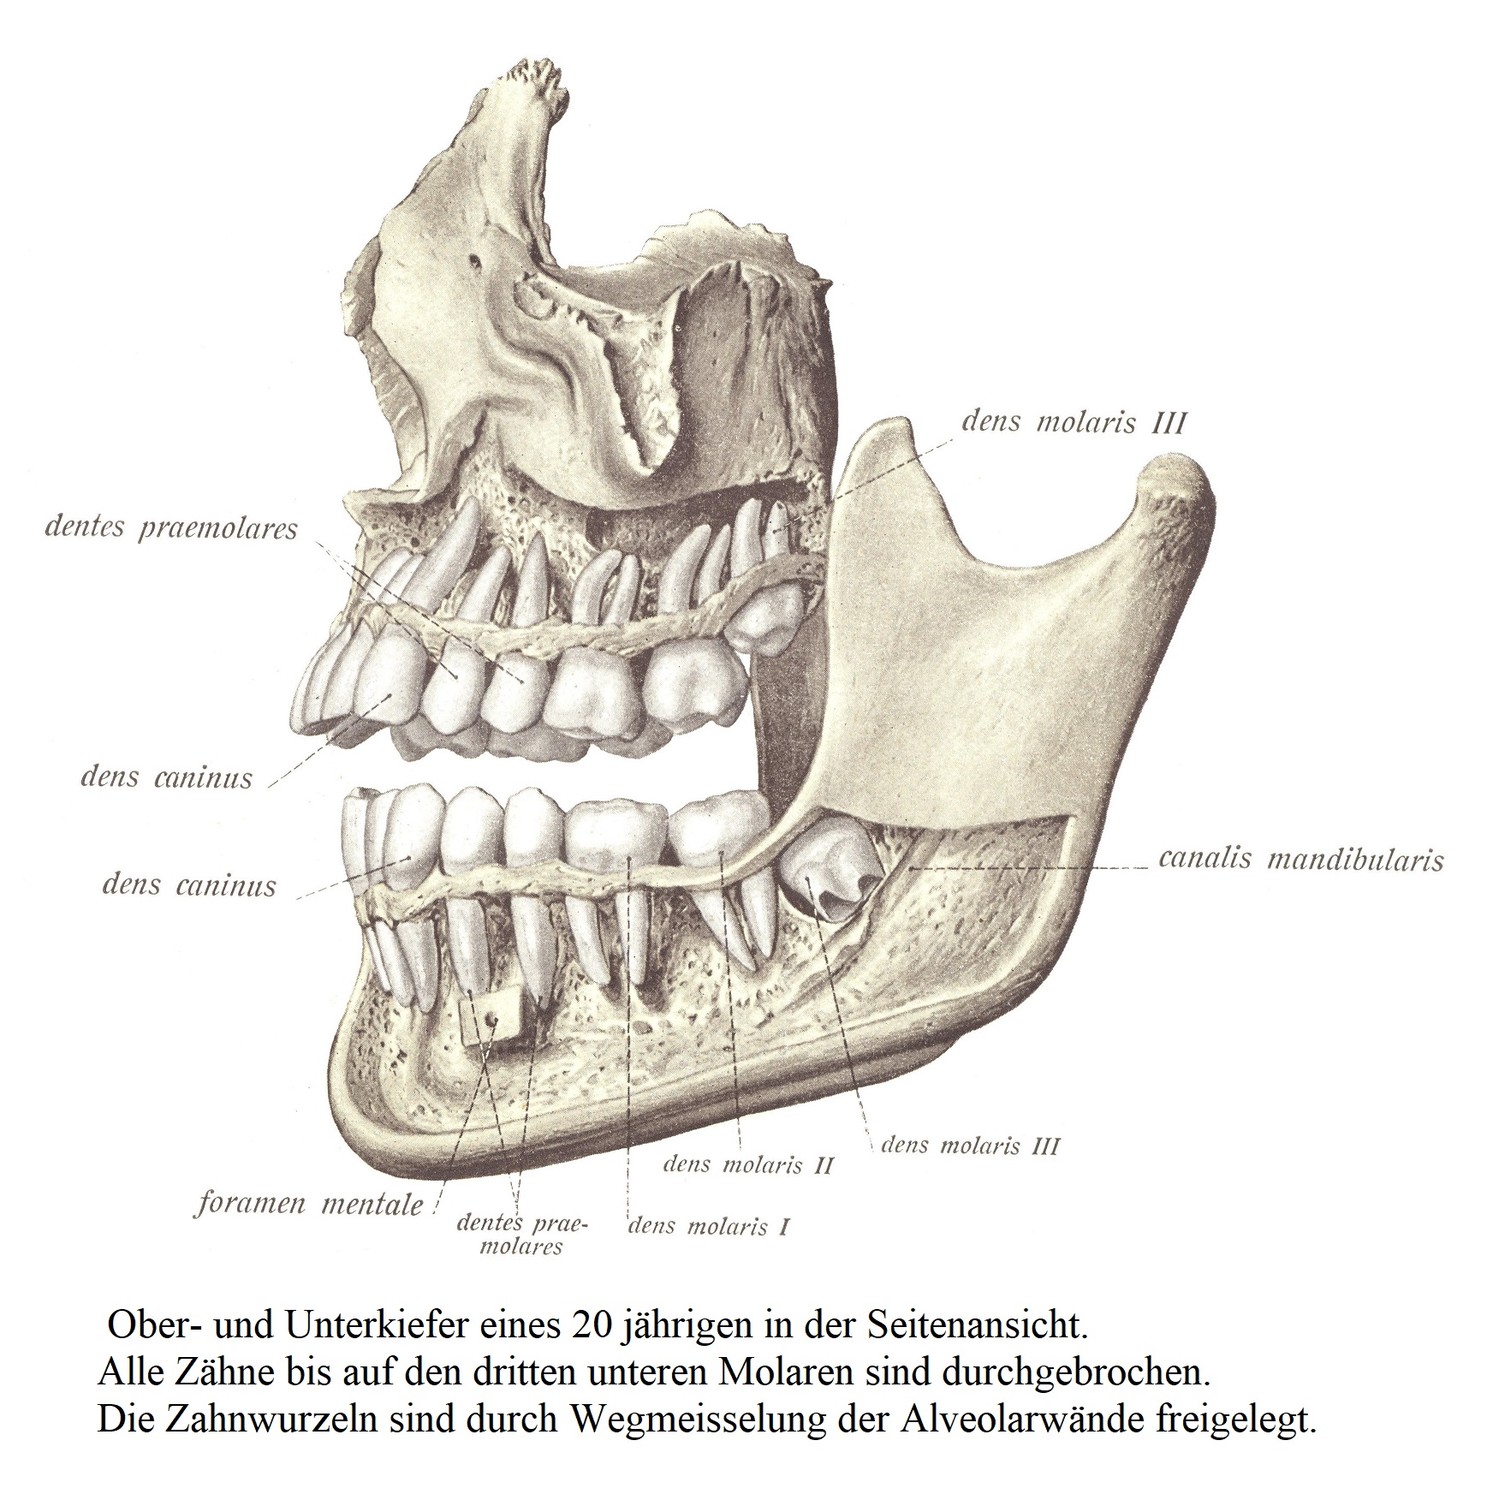 Боковой вид верхней и нижней челюсти мужчины 20 лет. Все зубы прорезались, кроме третьего нижнего моляра. Корни зубов обнажаются путем срезания альвеолярных стенок.